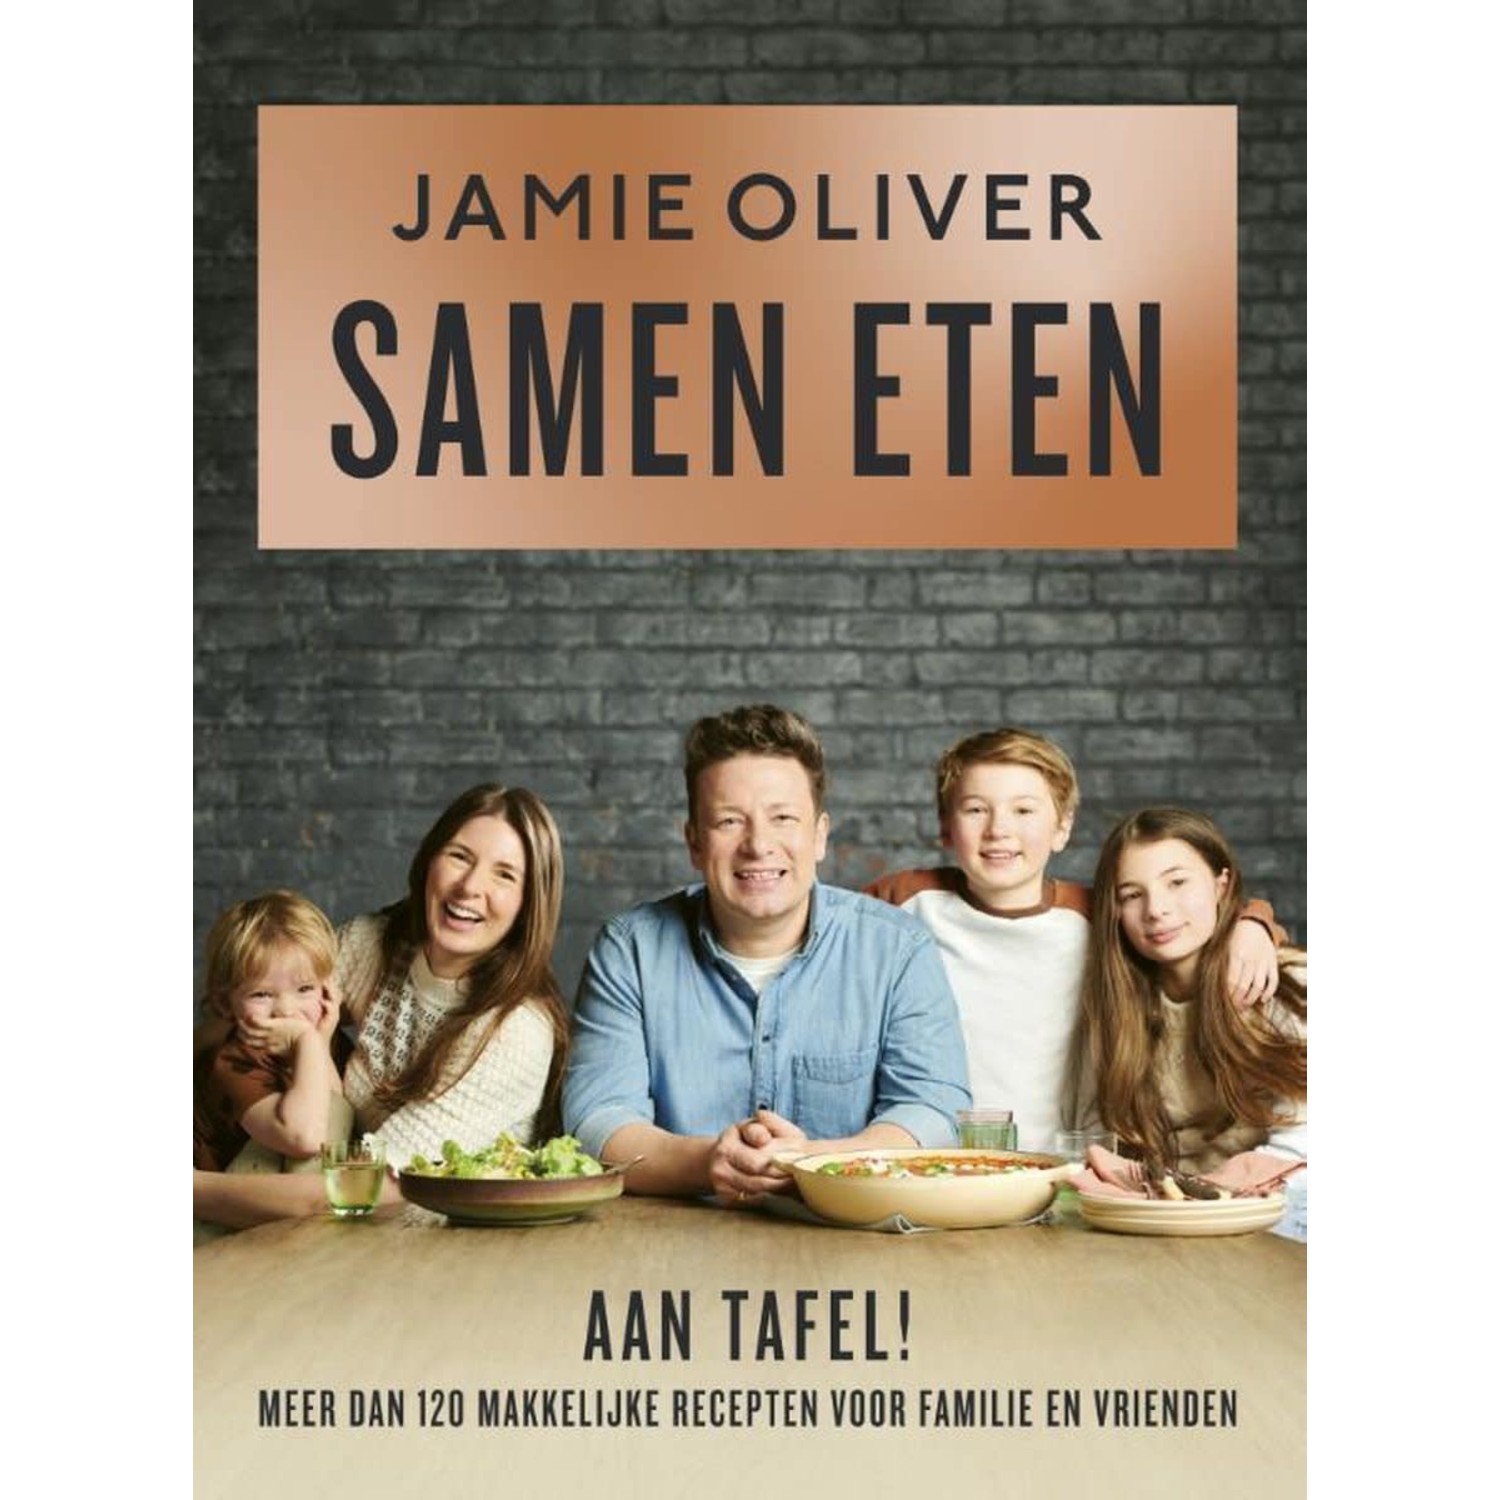 Jamie - Samen eten | Groot assortiment kookboeken - Kookwinkel Van Erp